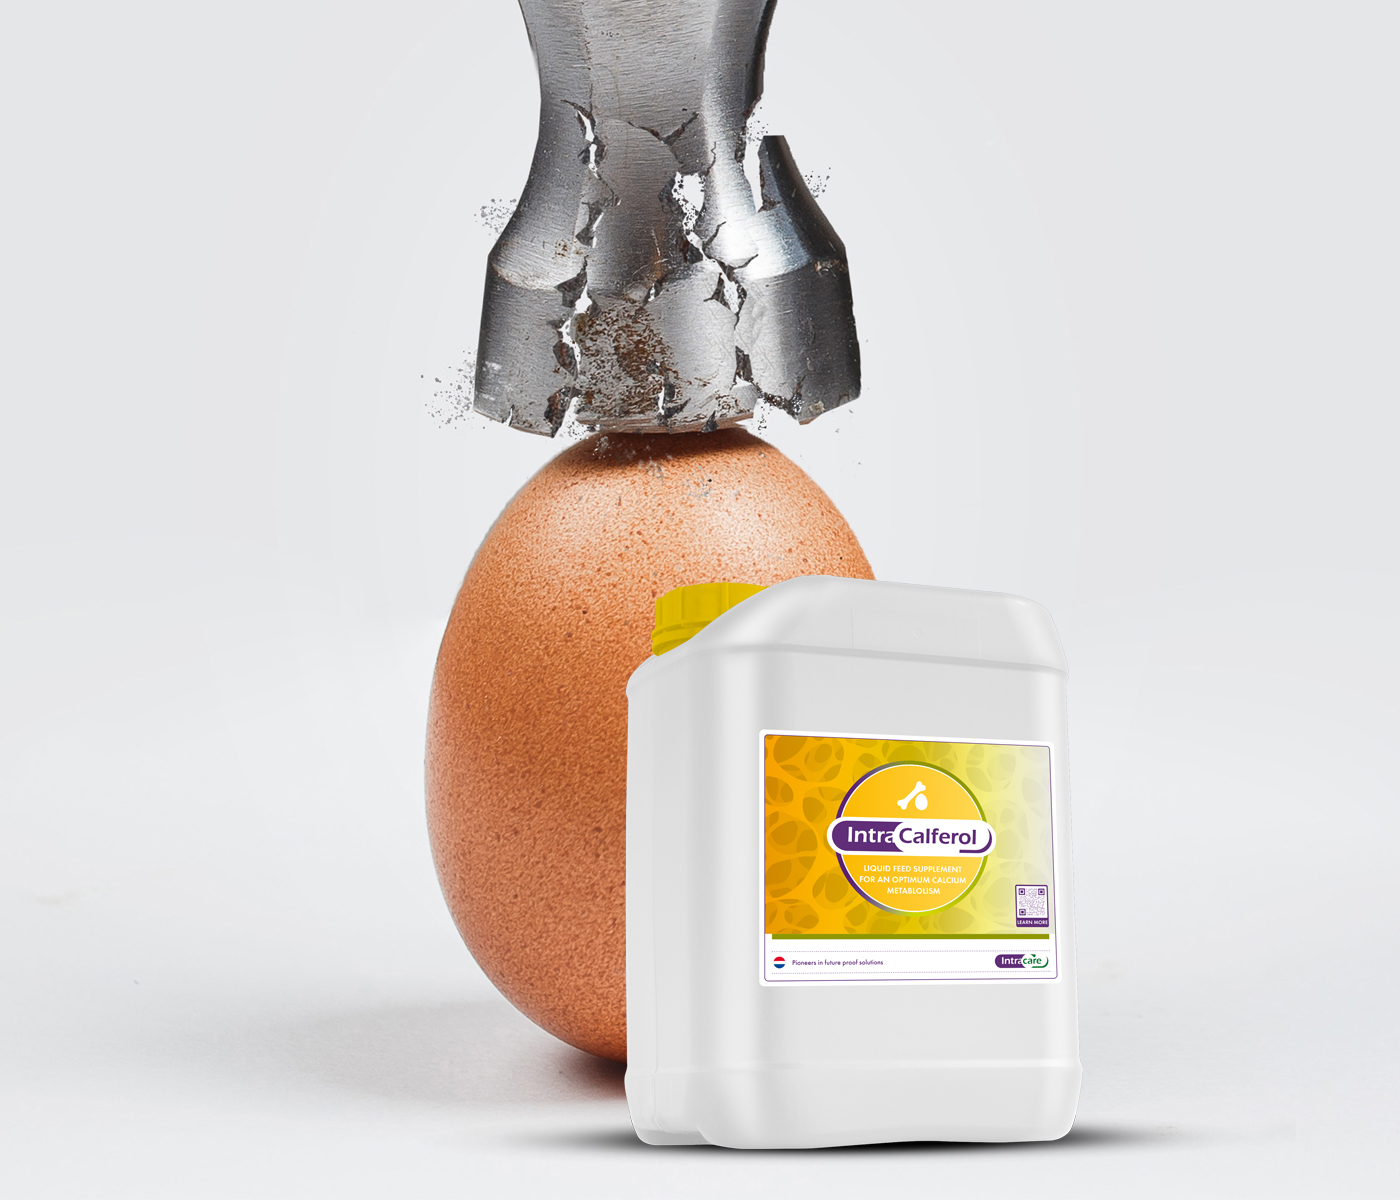 ENSAYO DE CAMPO: Aumento inmediato de la calidad de la cáscara de huevo con Intra Calferol